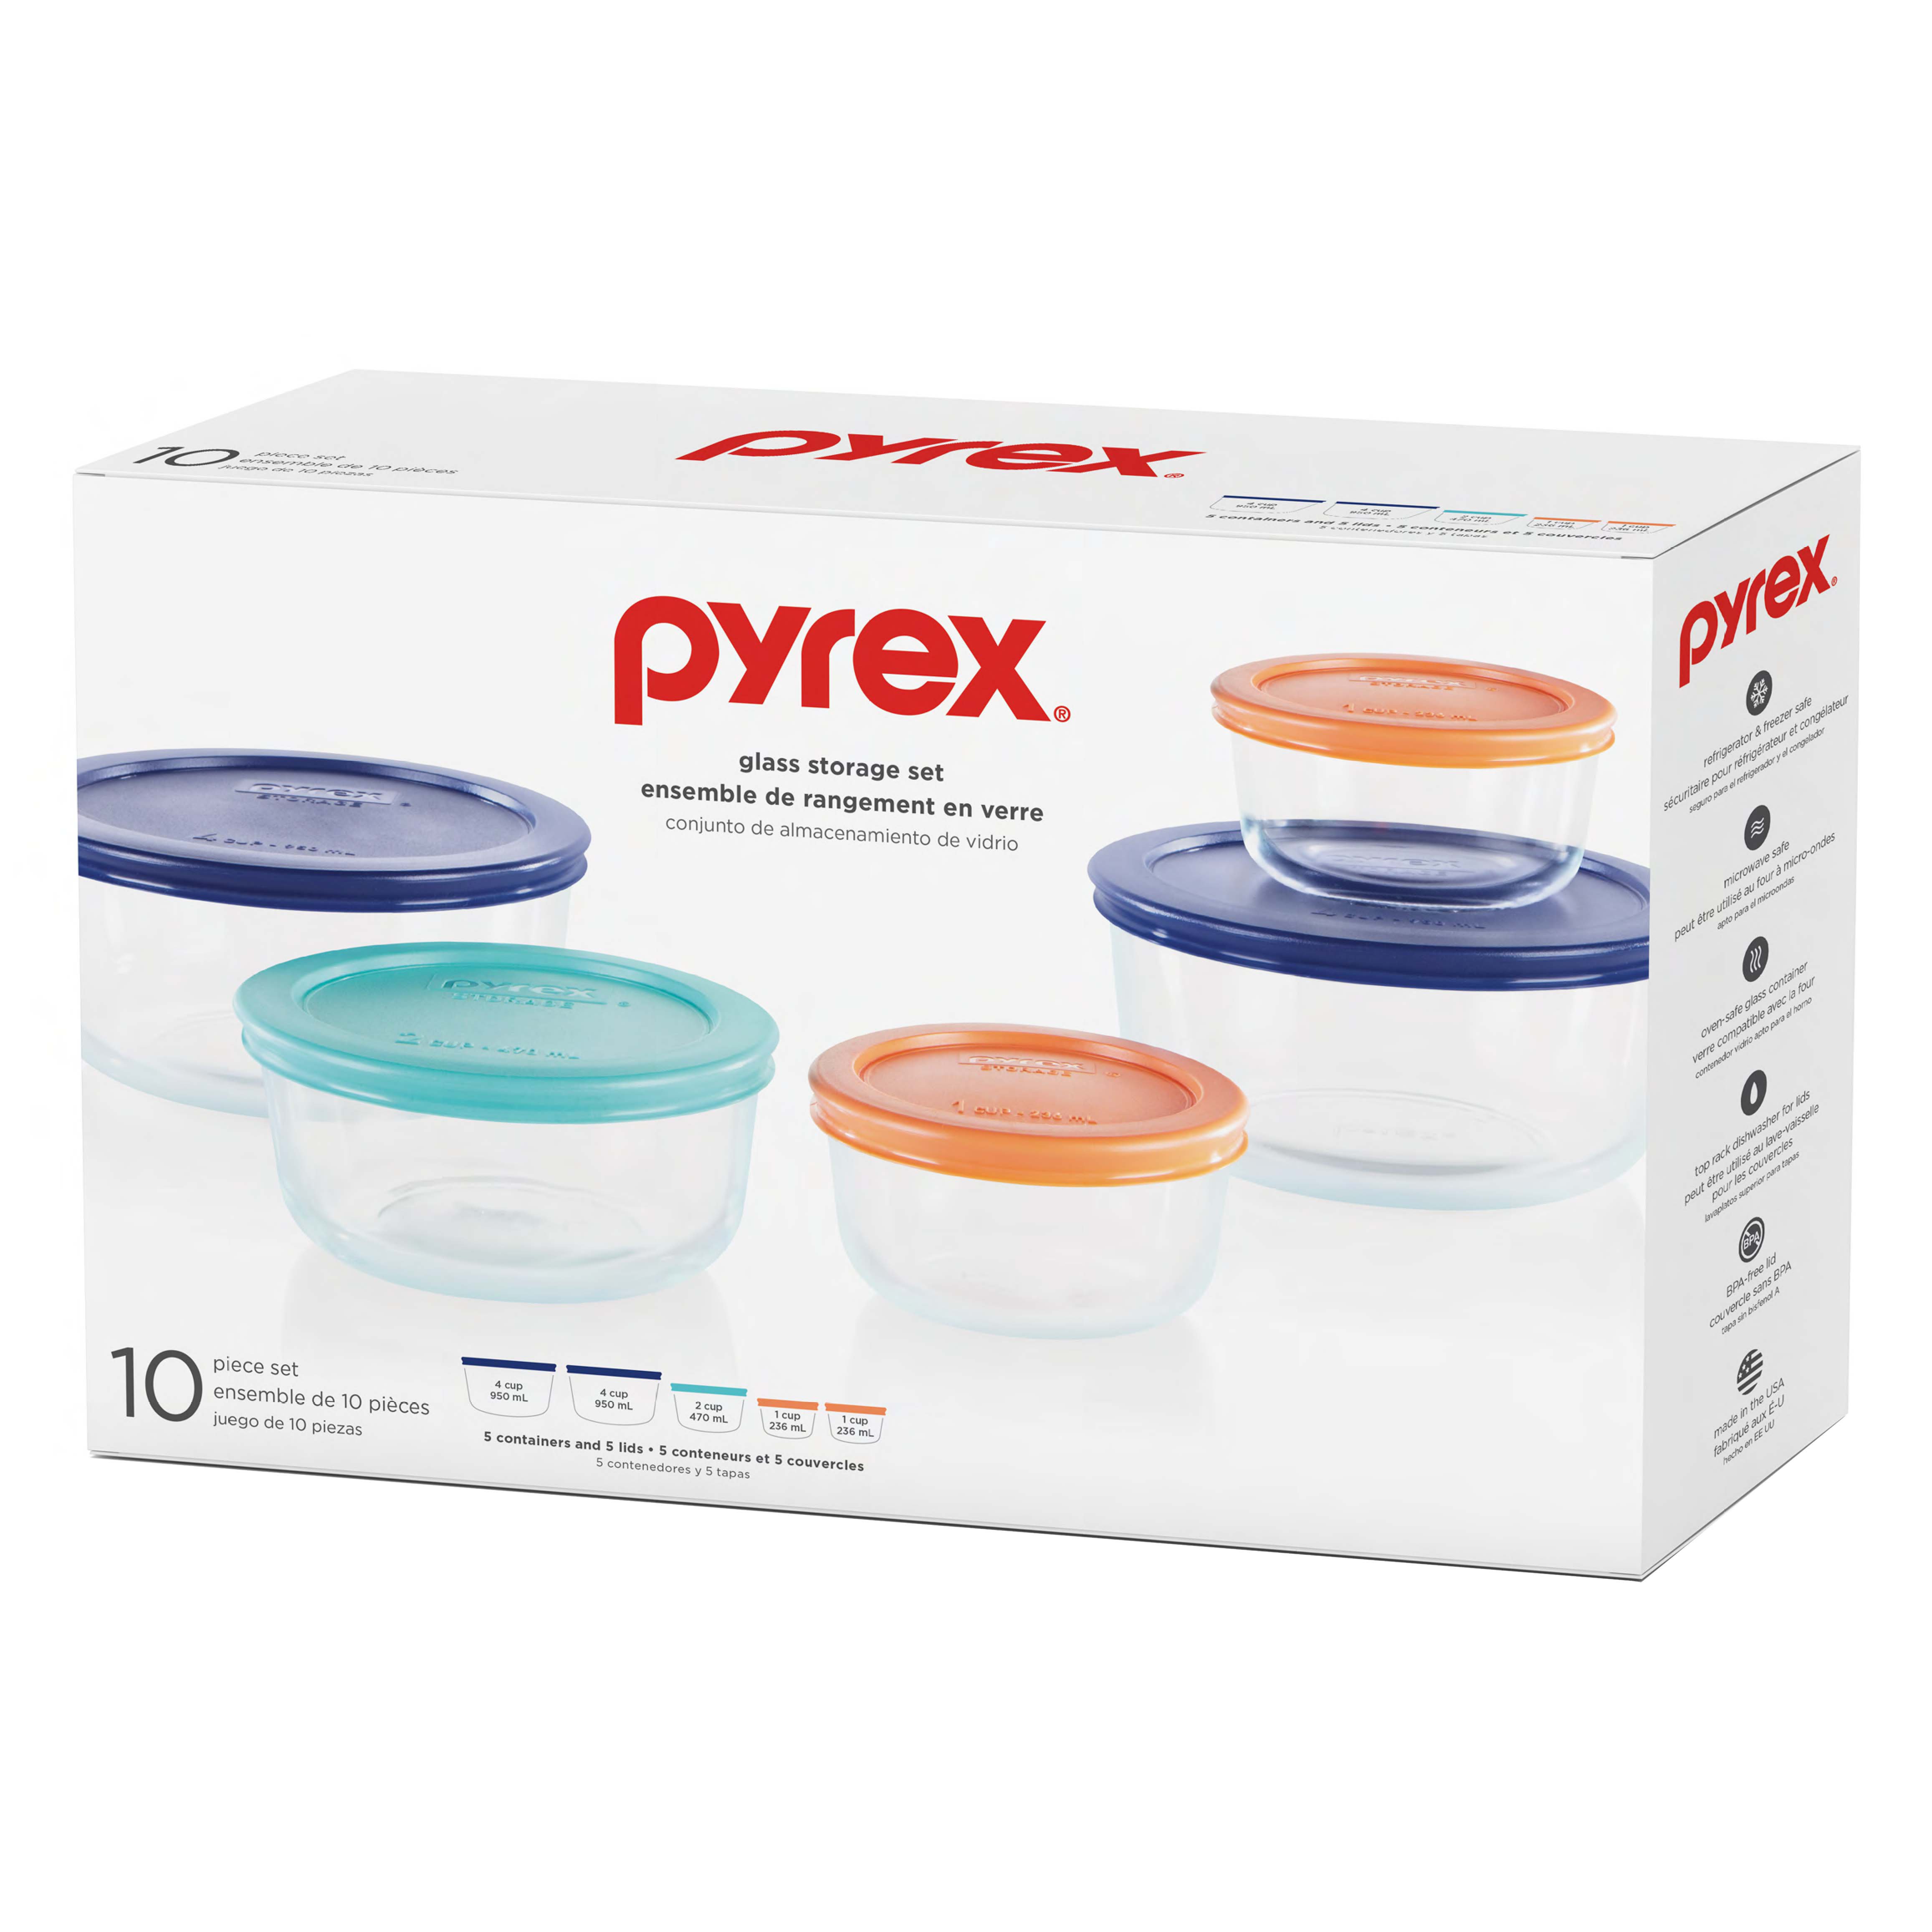 Corelle Pyrex Glass Storage Set